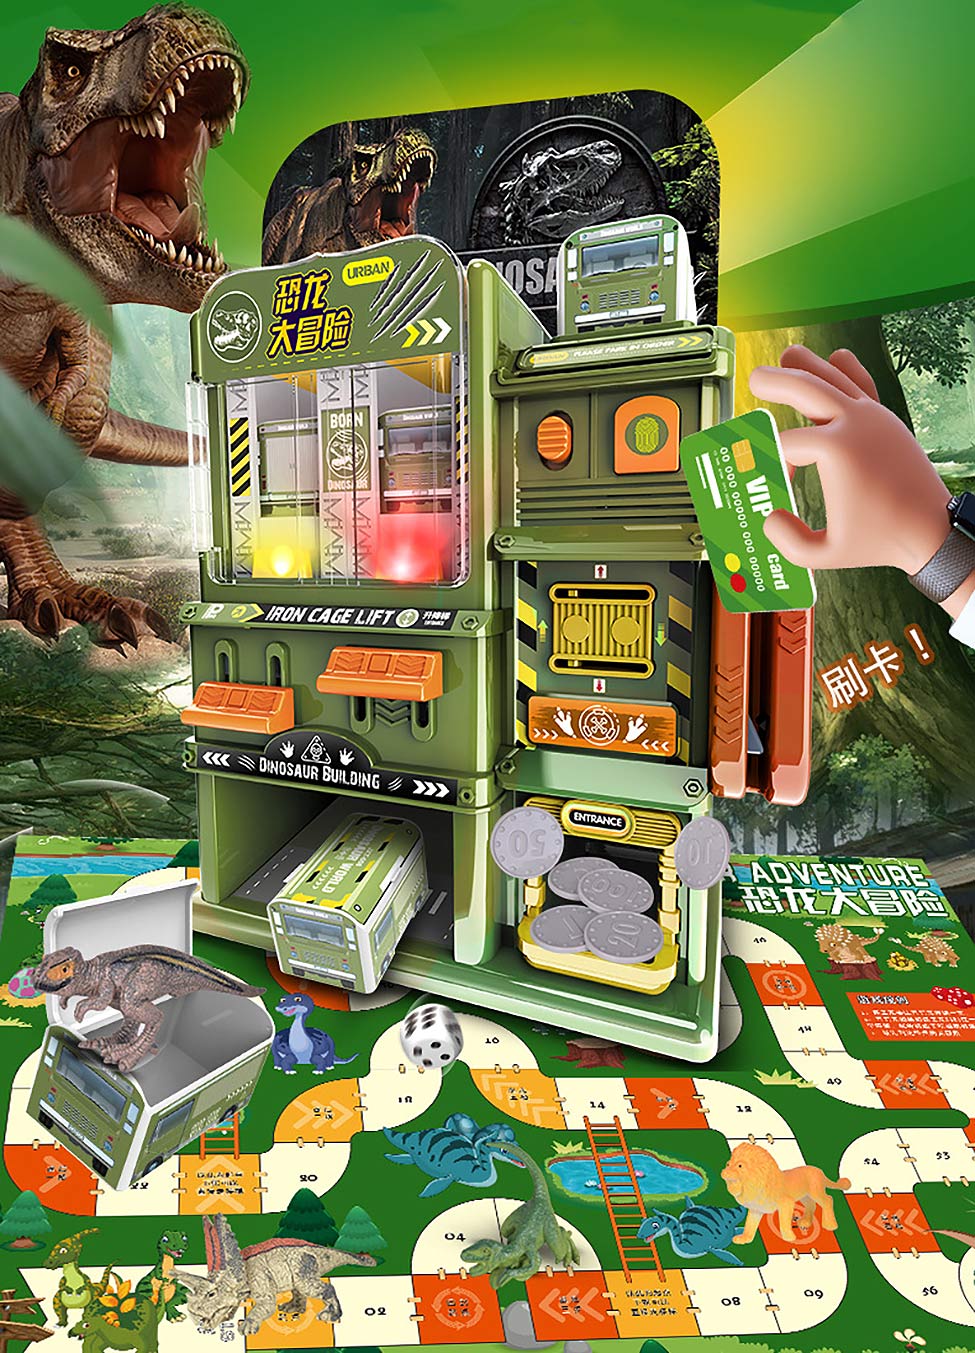 自動恐竜建造物自販機おもちゃ 10体の恐竜フィギュア6体付き